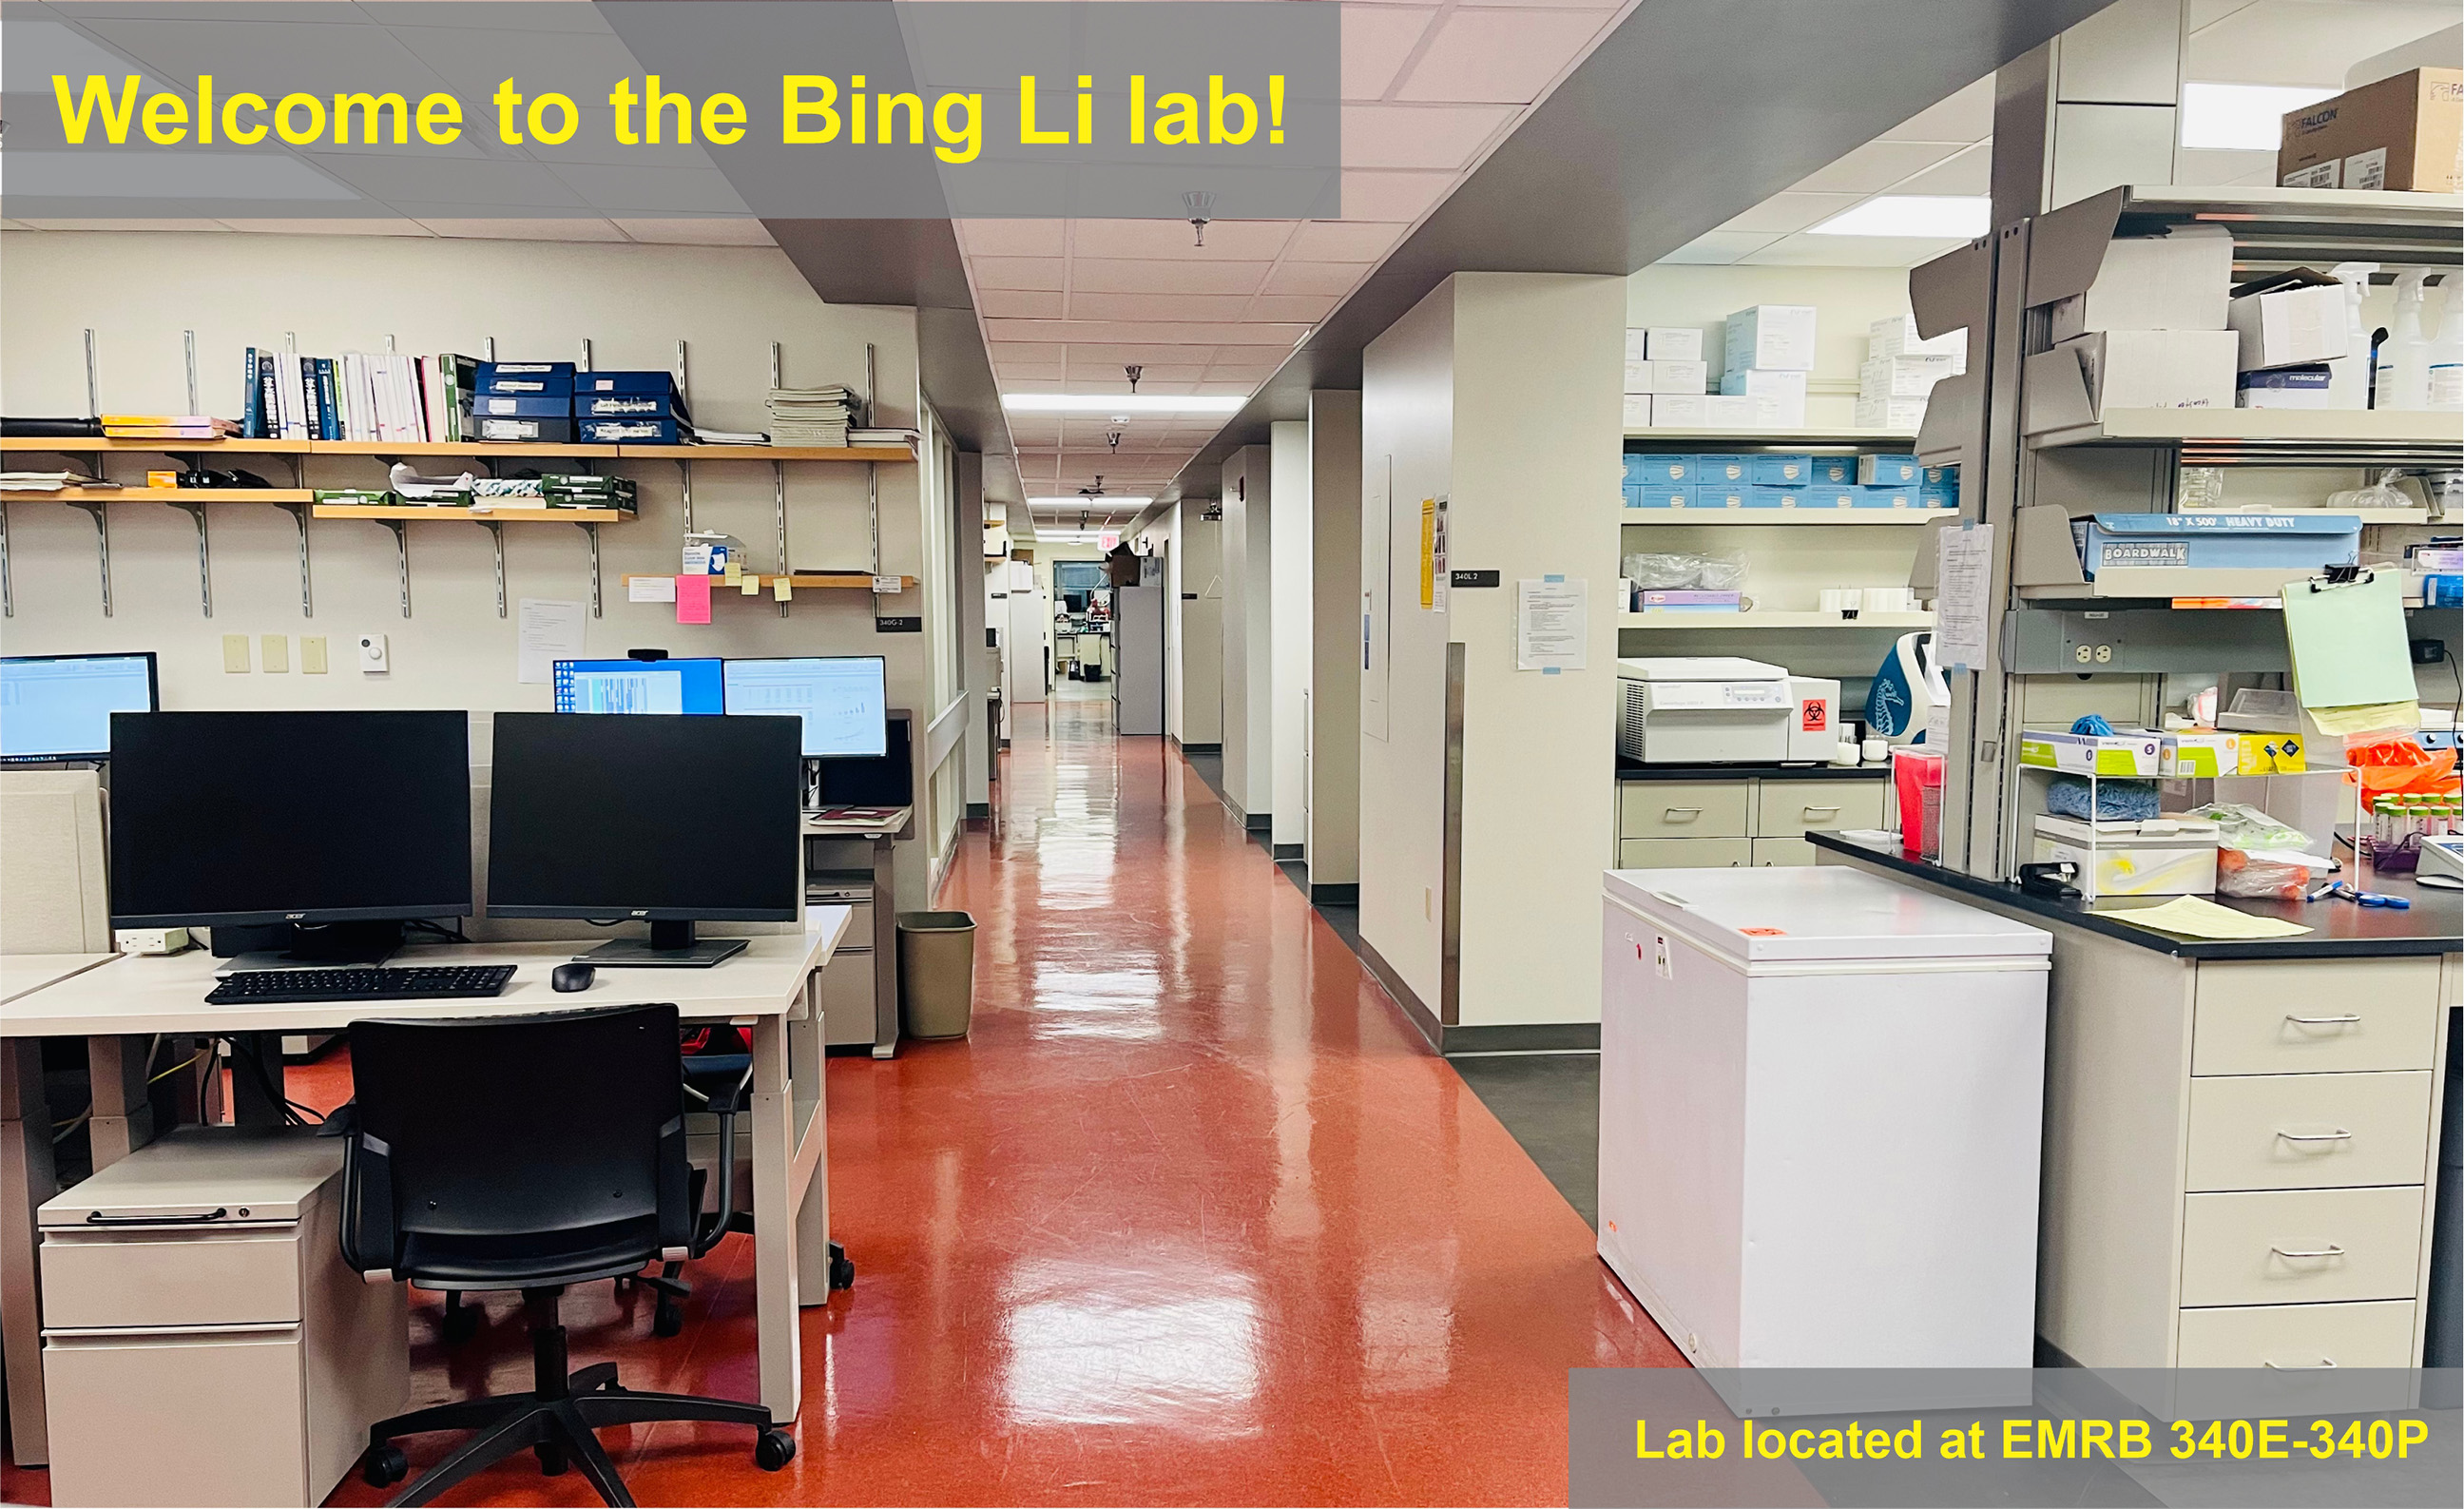 Dr. Bing Li's Lab